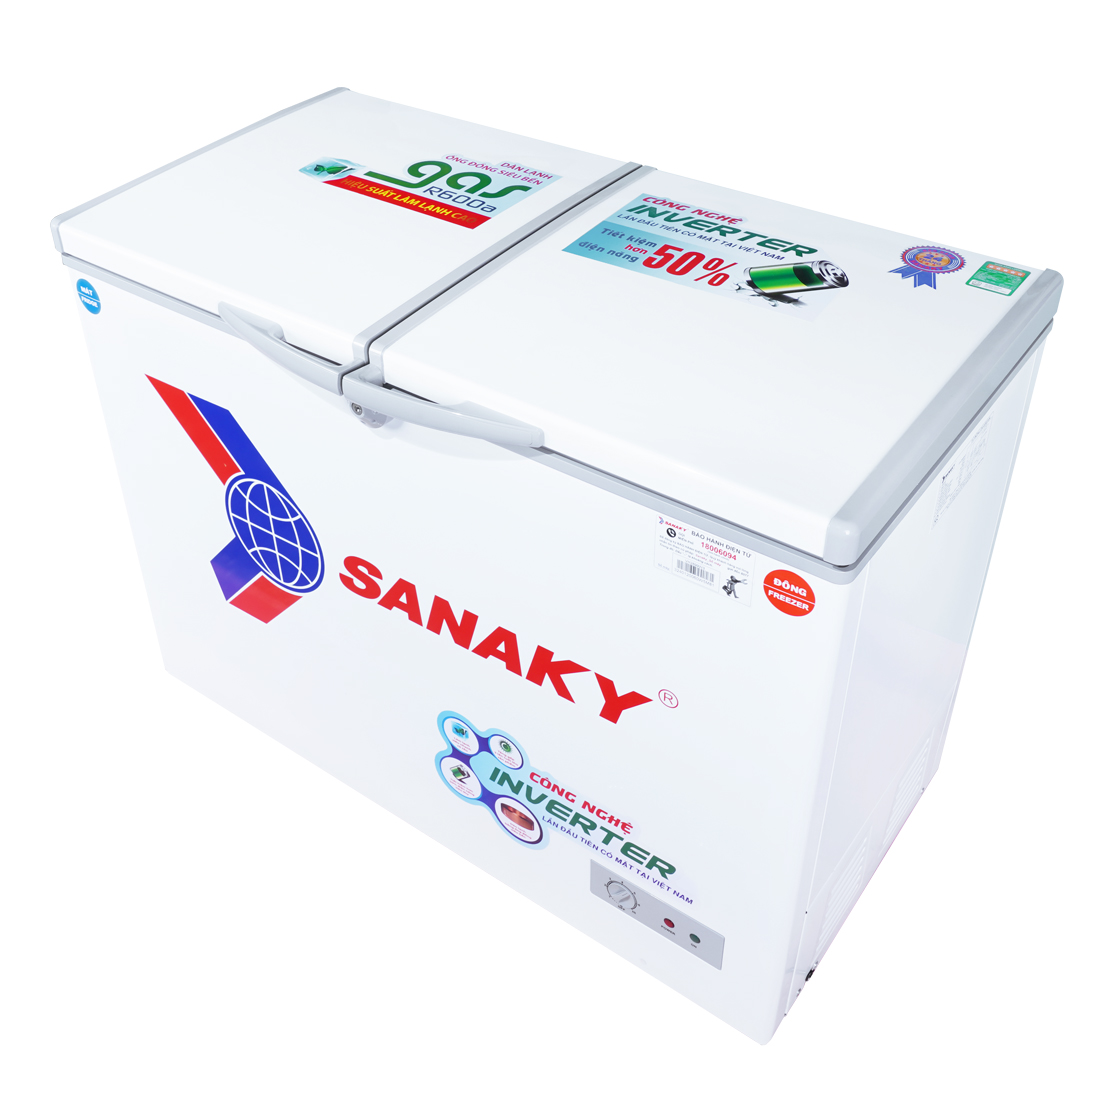 Tủ Đông Sanaky VH-2899W3